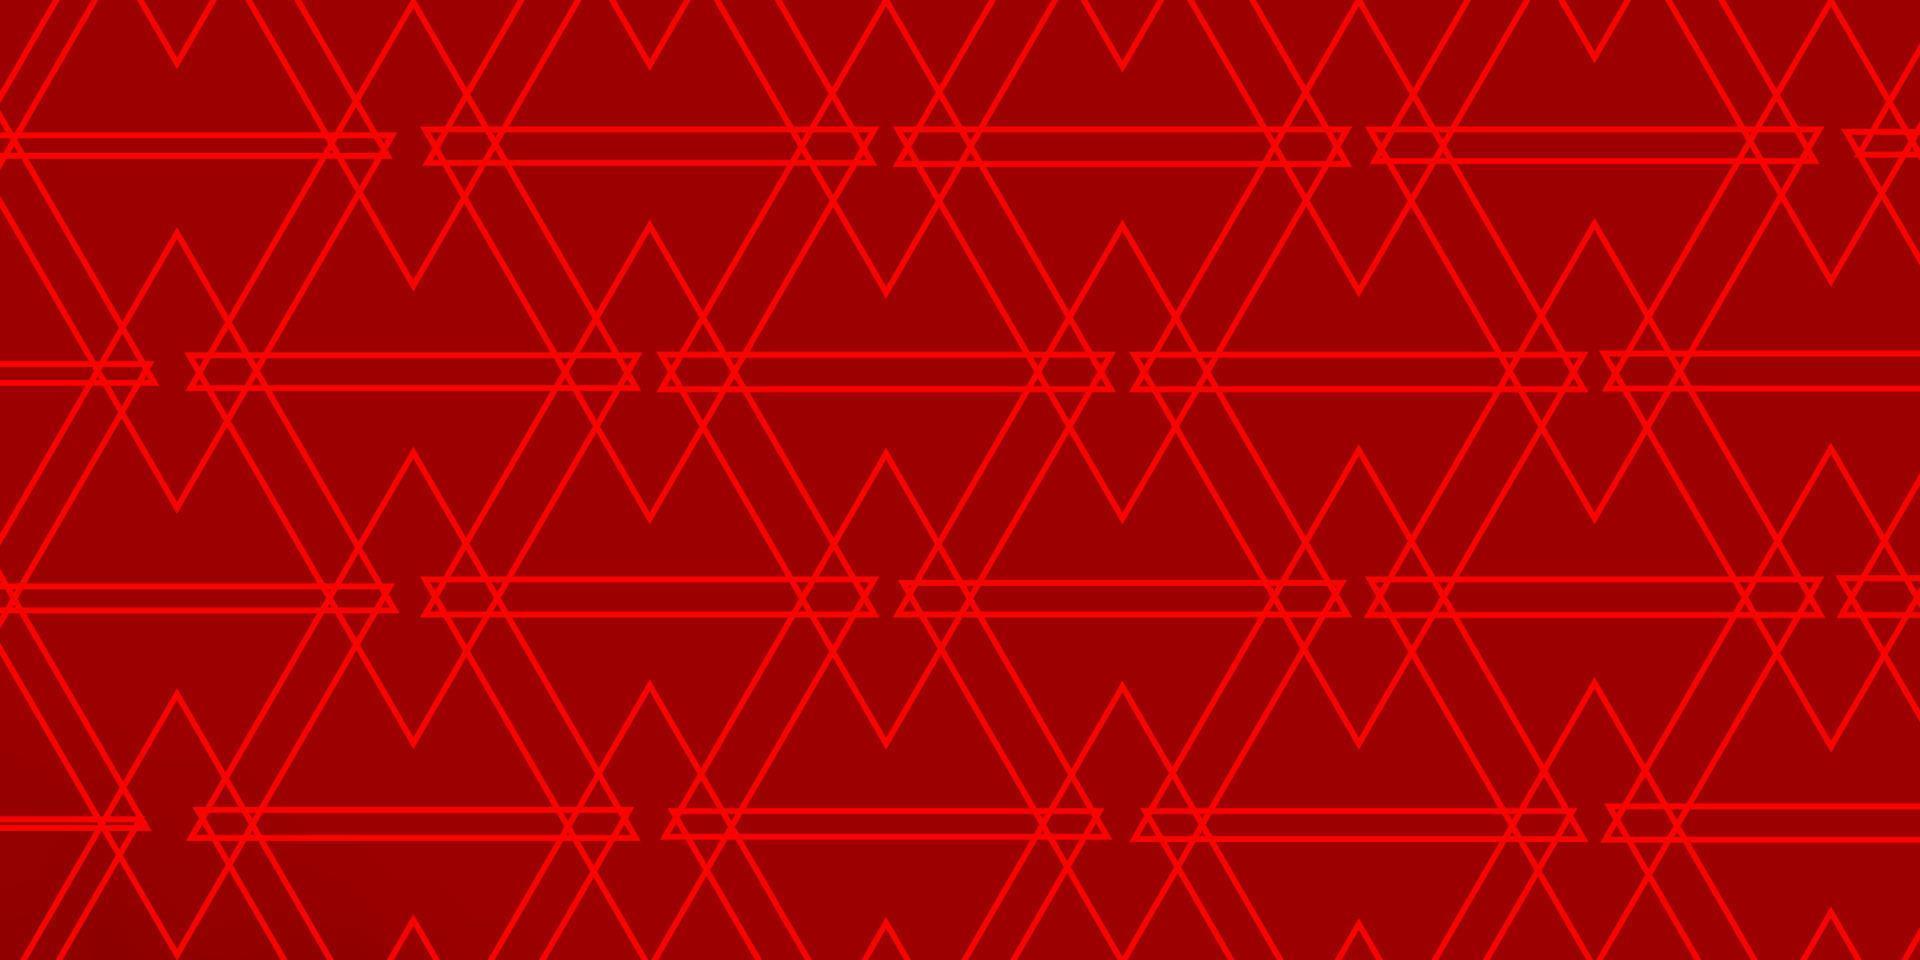 plantilla de vector rojo claro con cristales, triángulos.